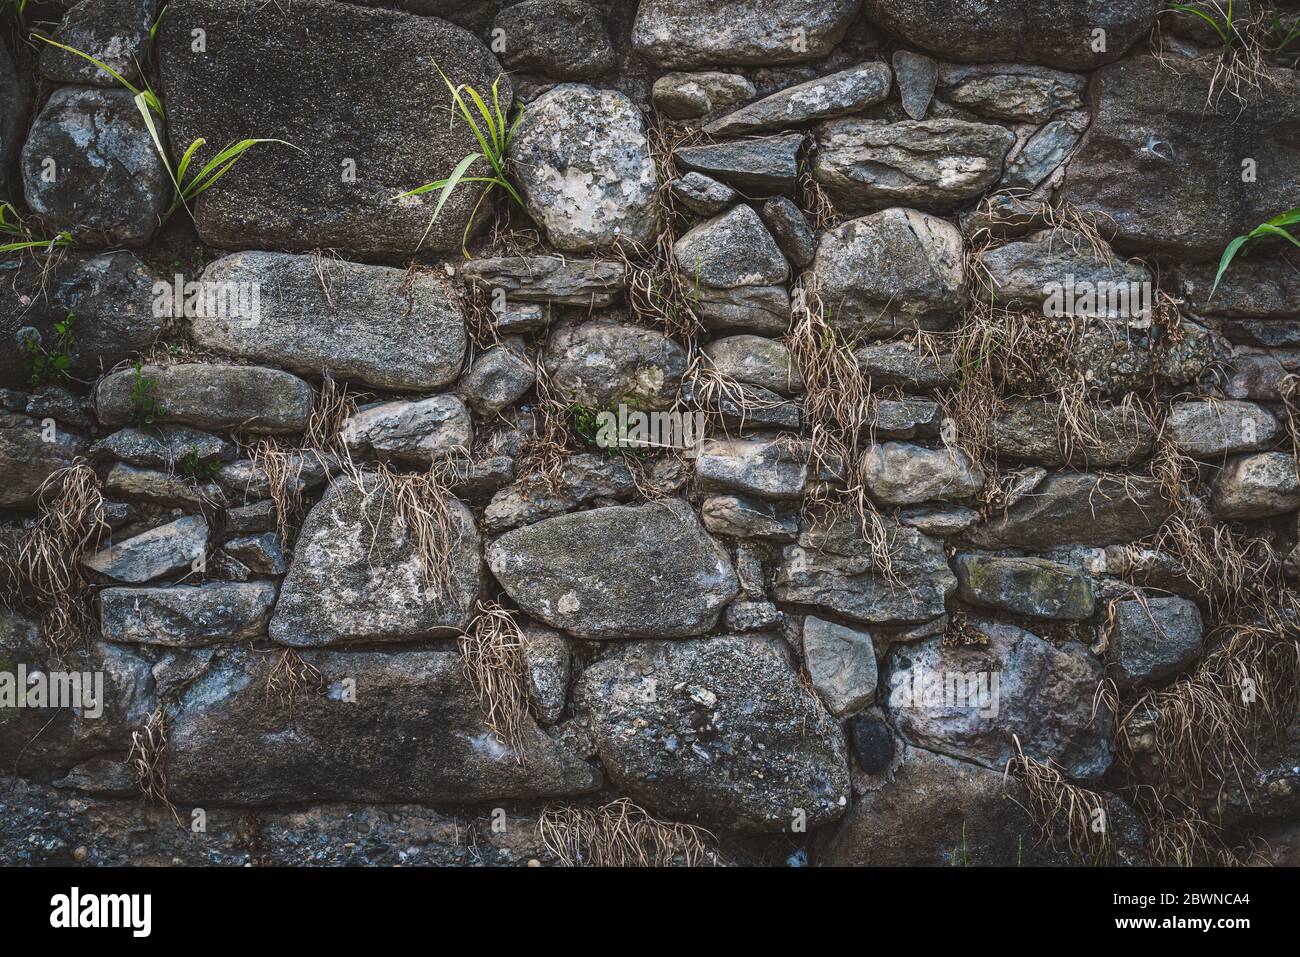 Vieux mur de pierre naturelle avec végétation verte et sèche qui pousse parmi les rochers Banque D'Images